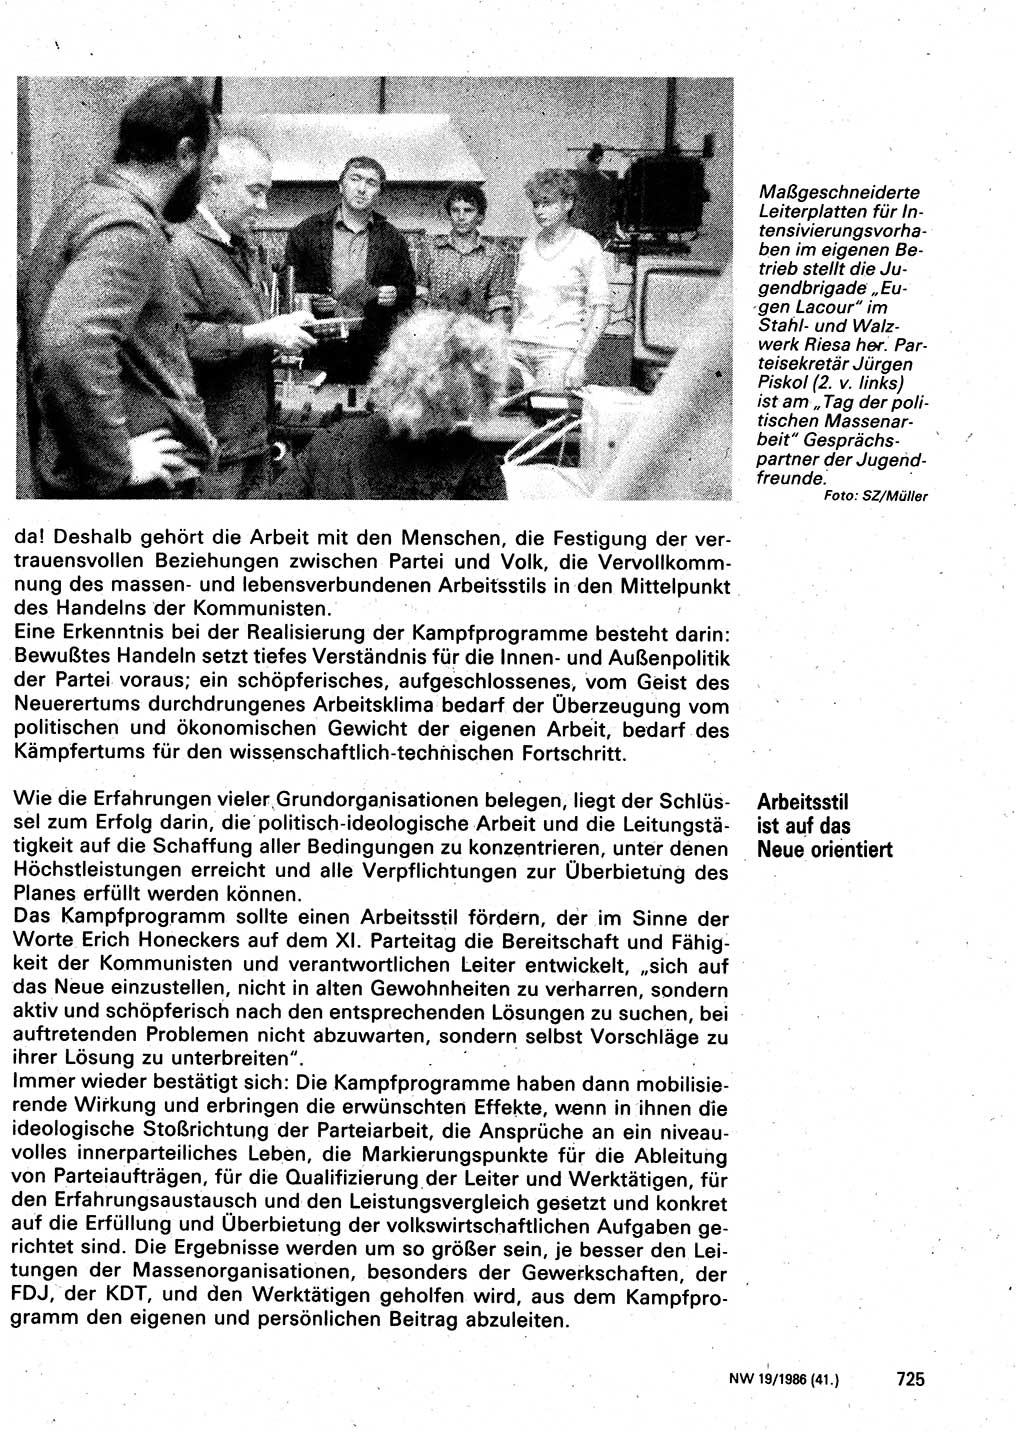 Neuer Weg (NW), Organ des Zentralkomitees (ZK) der SED (Sozialistische Einheitspartei Deutschlands) für Fragen des Parteilebens, 41. Jahrgang [Deutsche Demokratische Republik (DDR)] 1986, Seite 725 (NW ZK SED DDR 1986, S. 725)